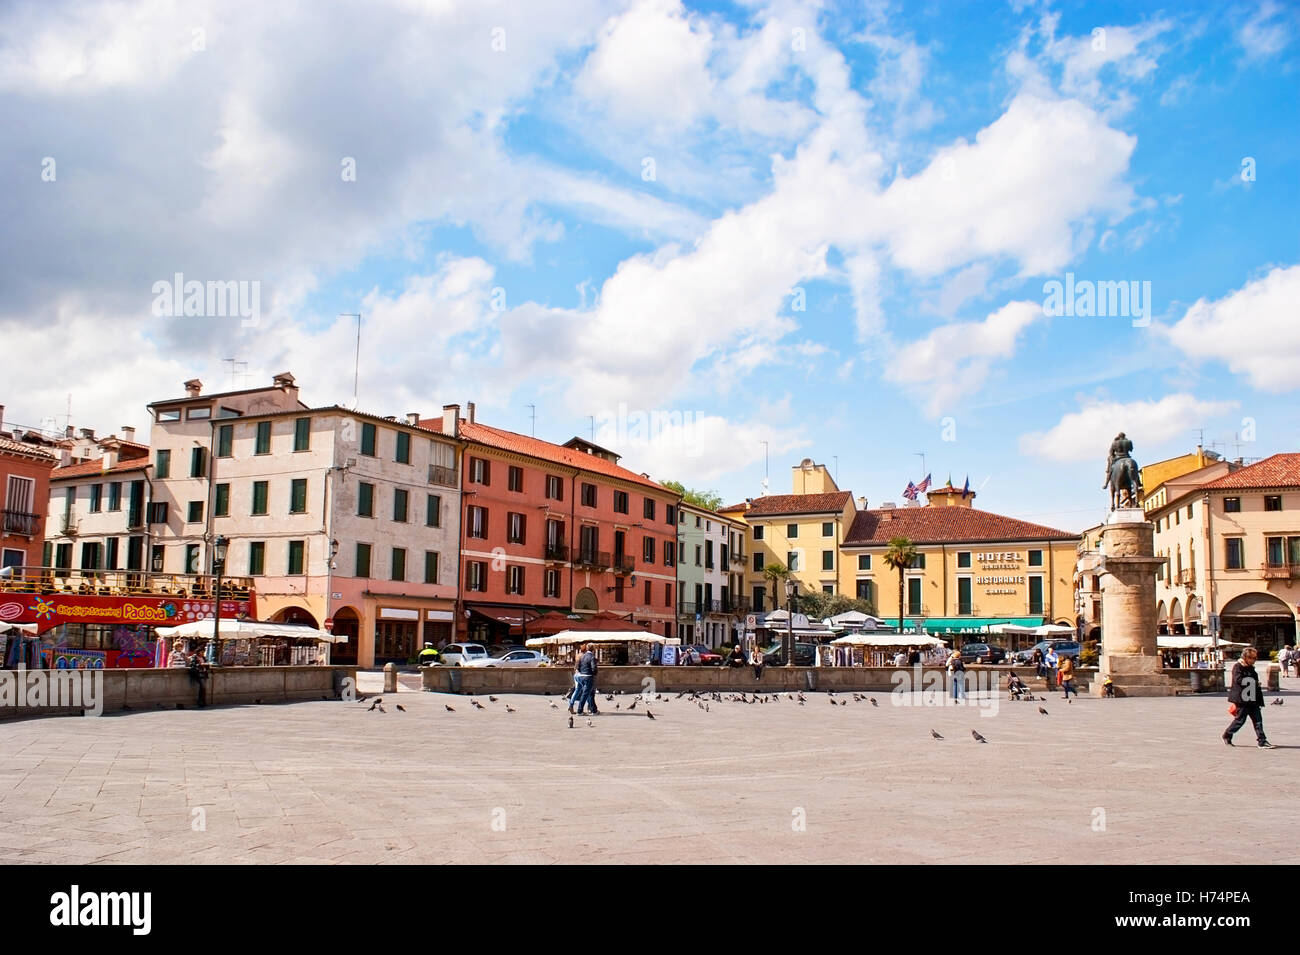 Piazza del Santo ist der belebten Platz, voll von Geschäften, Cafés und Hotels, mit Reiterdenkmal des Gattamelata von Donatello Stockfoto